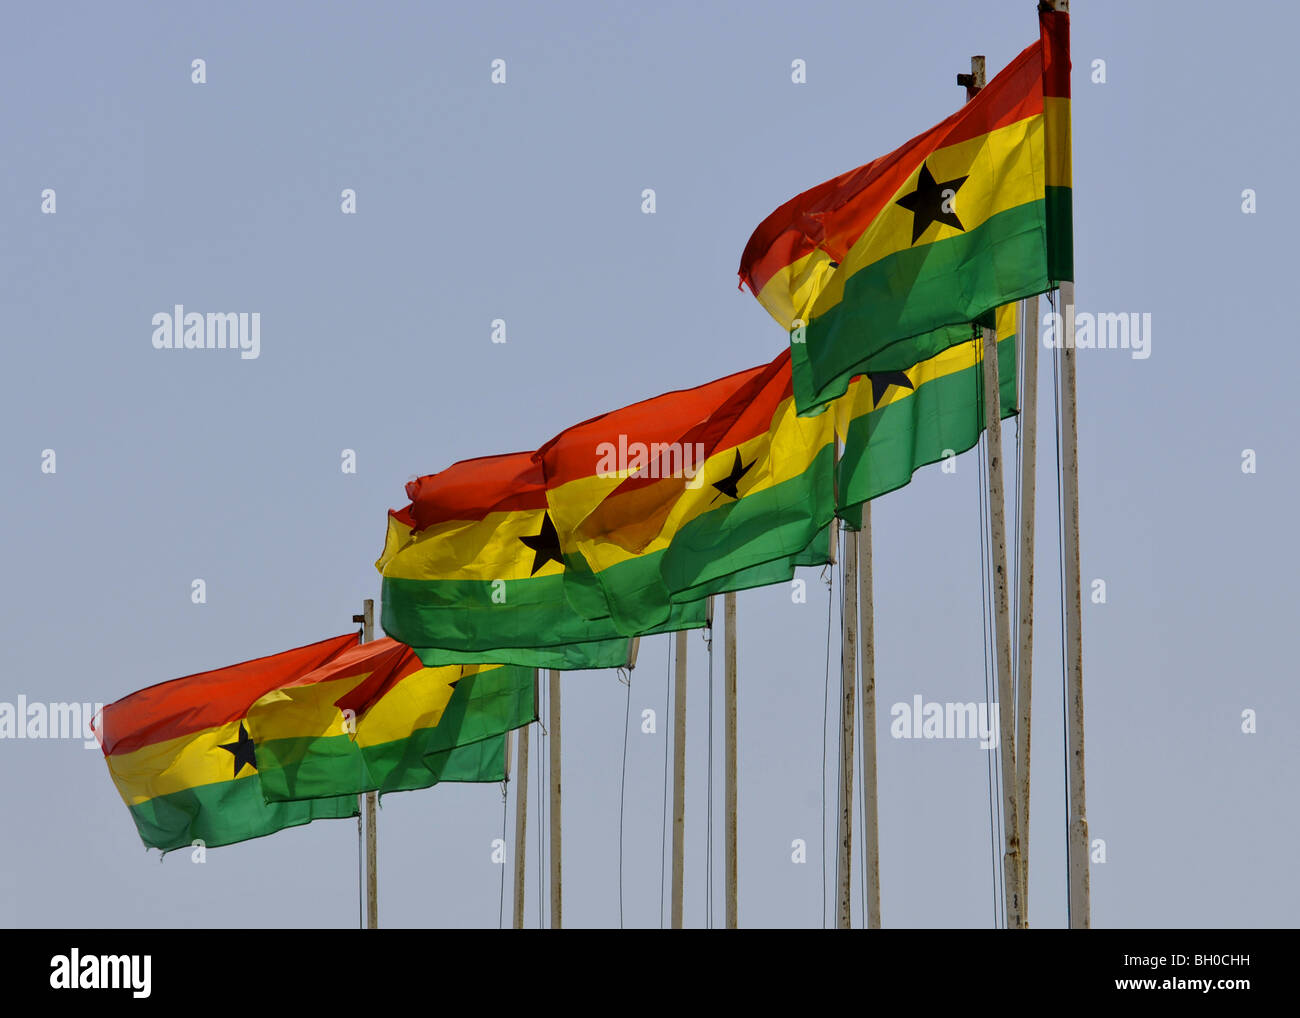 Ghana flag Stock Photo